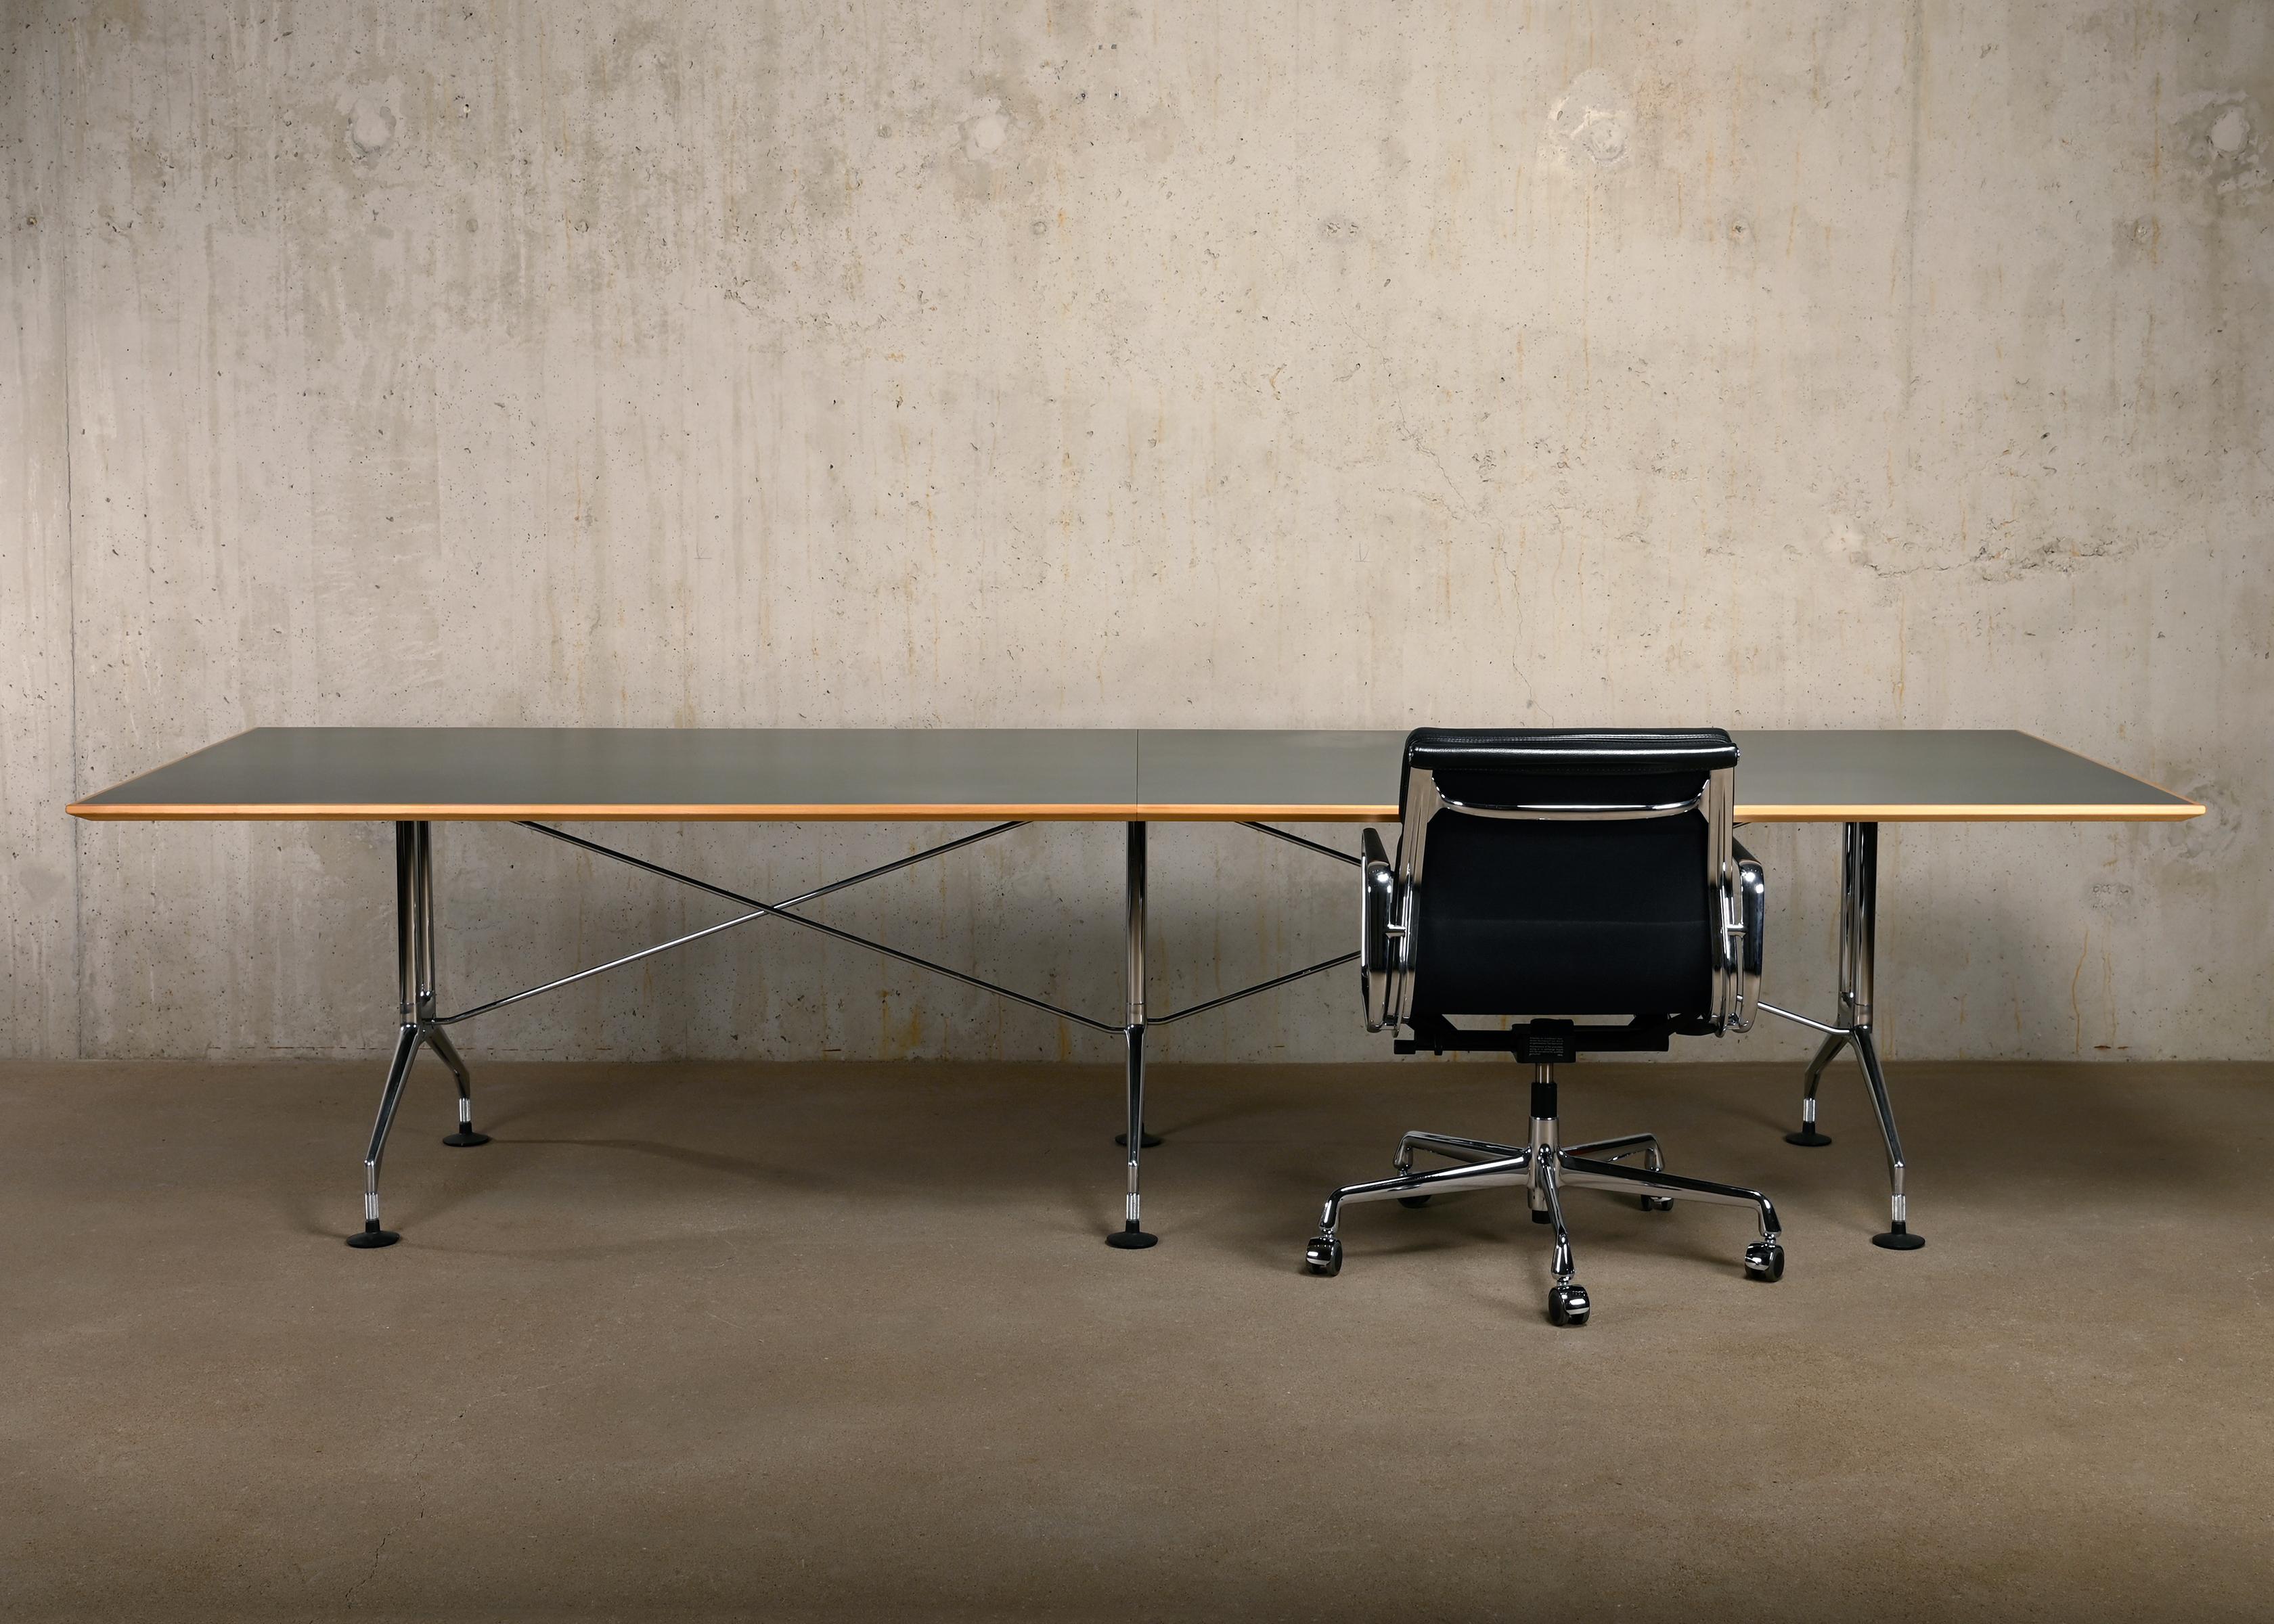 Spatio Konferenztisch, Esstisch oder Schreibtisch, entworfen von Antonio Citterio und hergestellt von Vitra. Tischplatte aus Linoleum in einer grün-blauen Farbe mit einer Kante aus massivem Ahornholz. Der Tisch ist in sehr gutem Zustand mit leichten